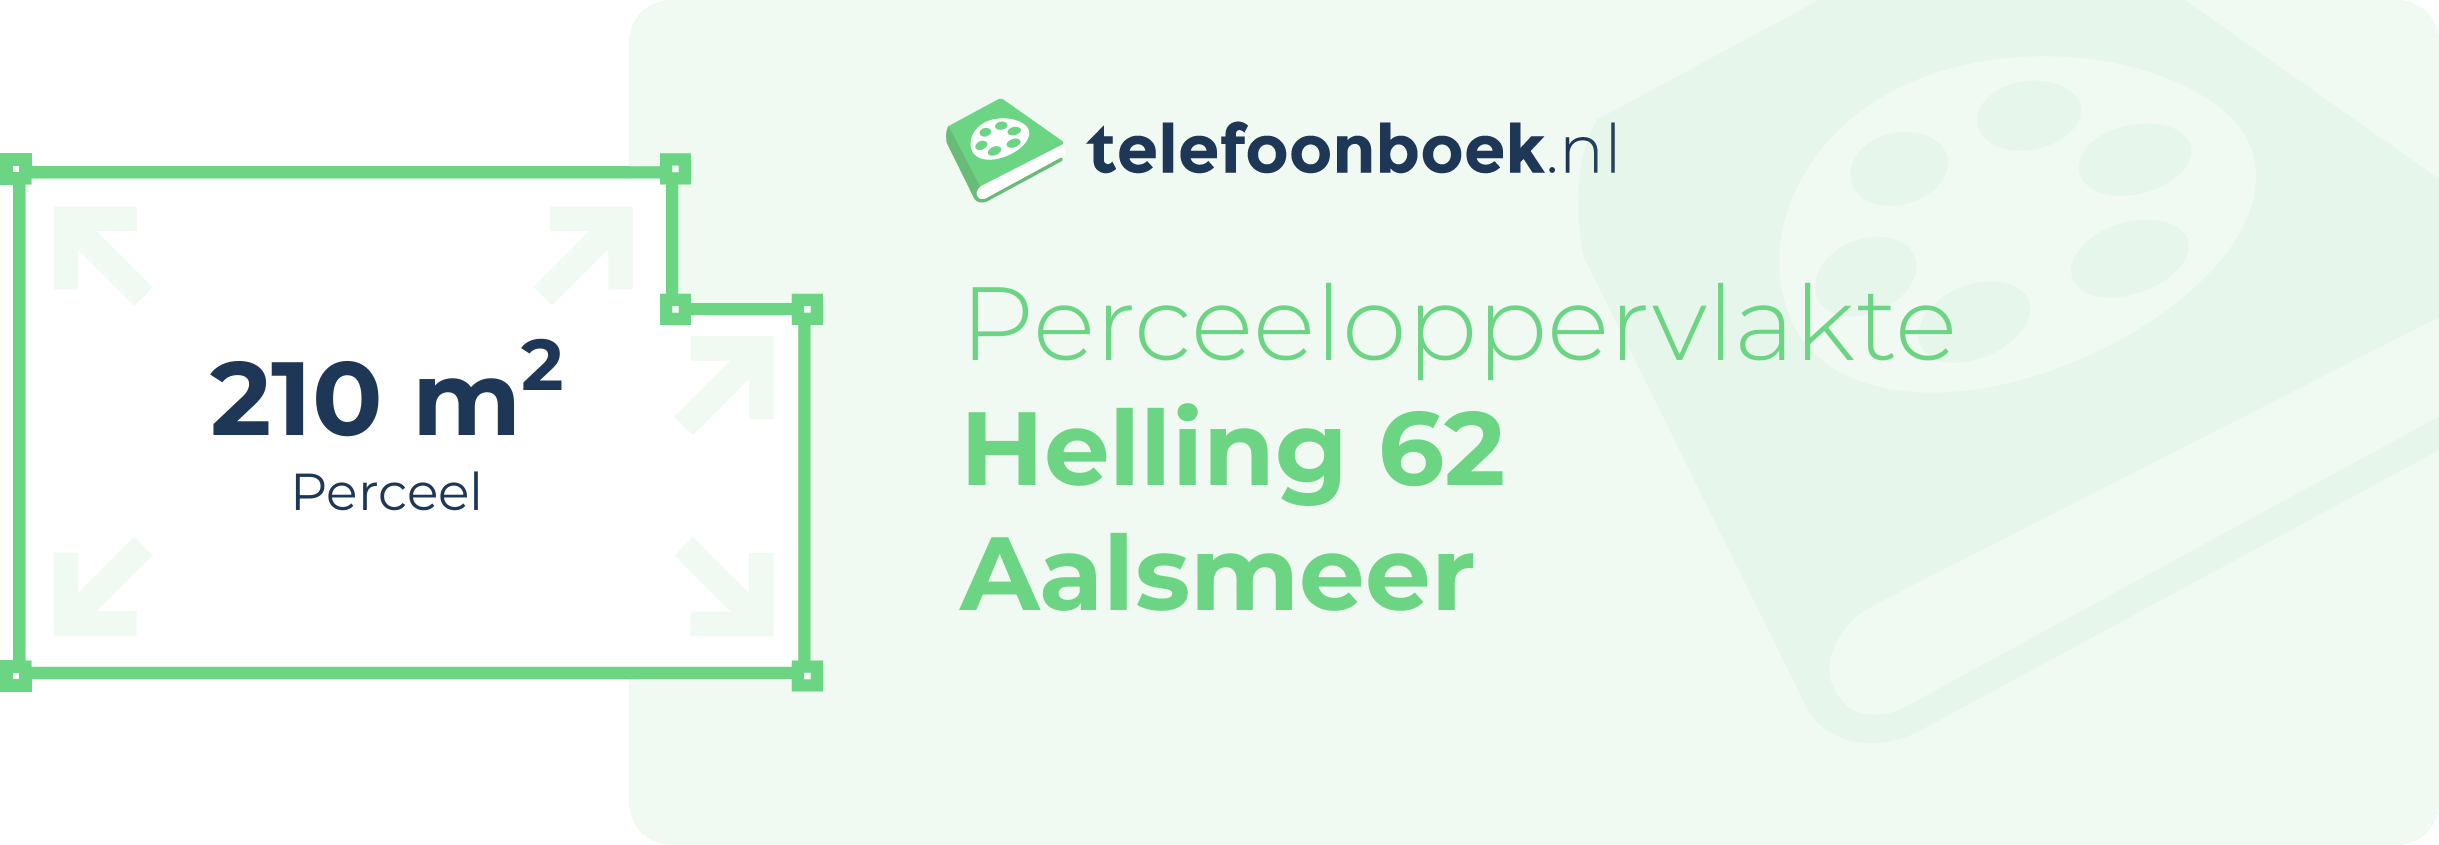 Perceeloppervlakte Helling 62 Aalsmeer